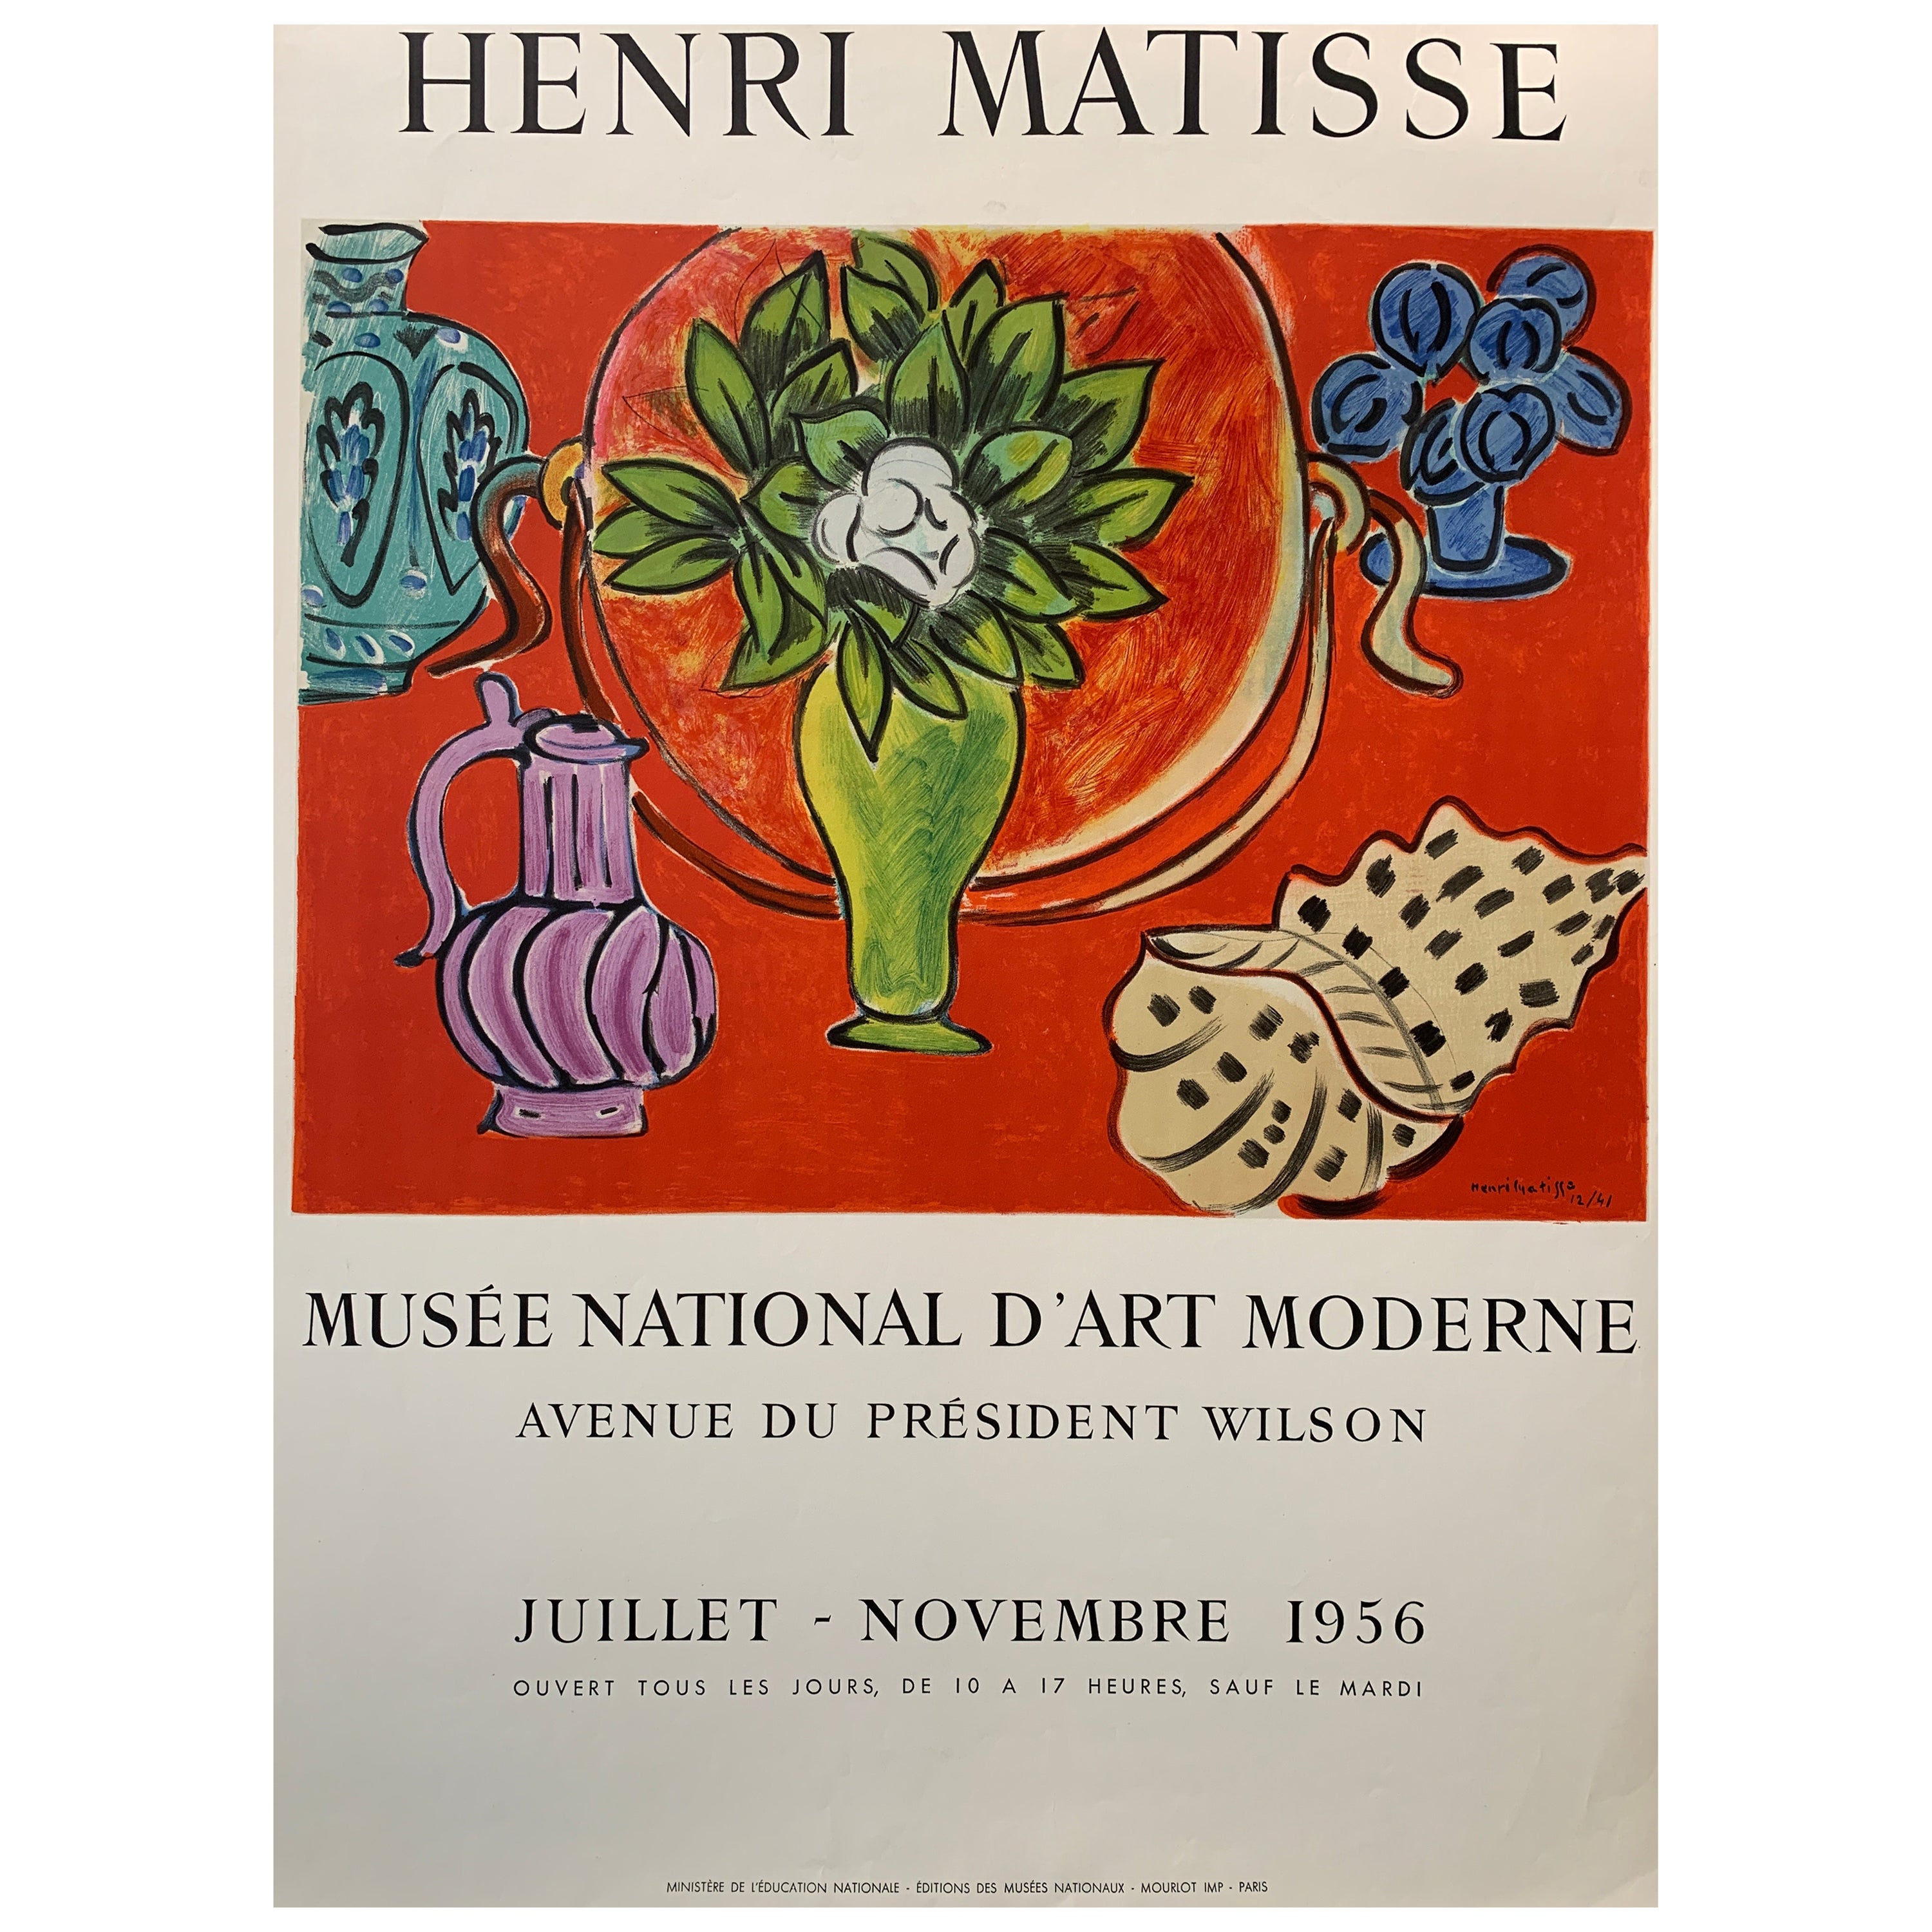 Henri Matisse, 'Musee National D’art Moderne' Original Exhibition Poster, 1956 For Sale